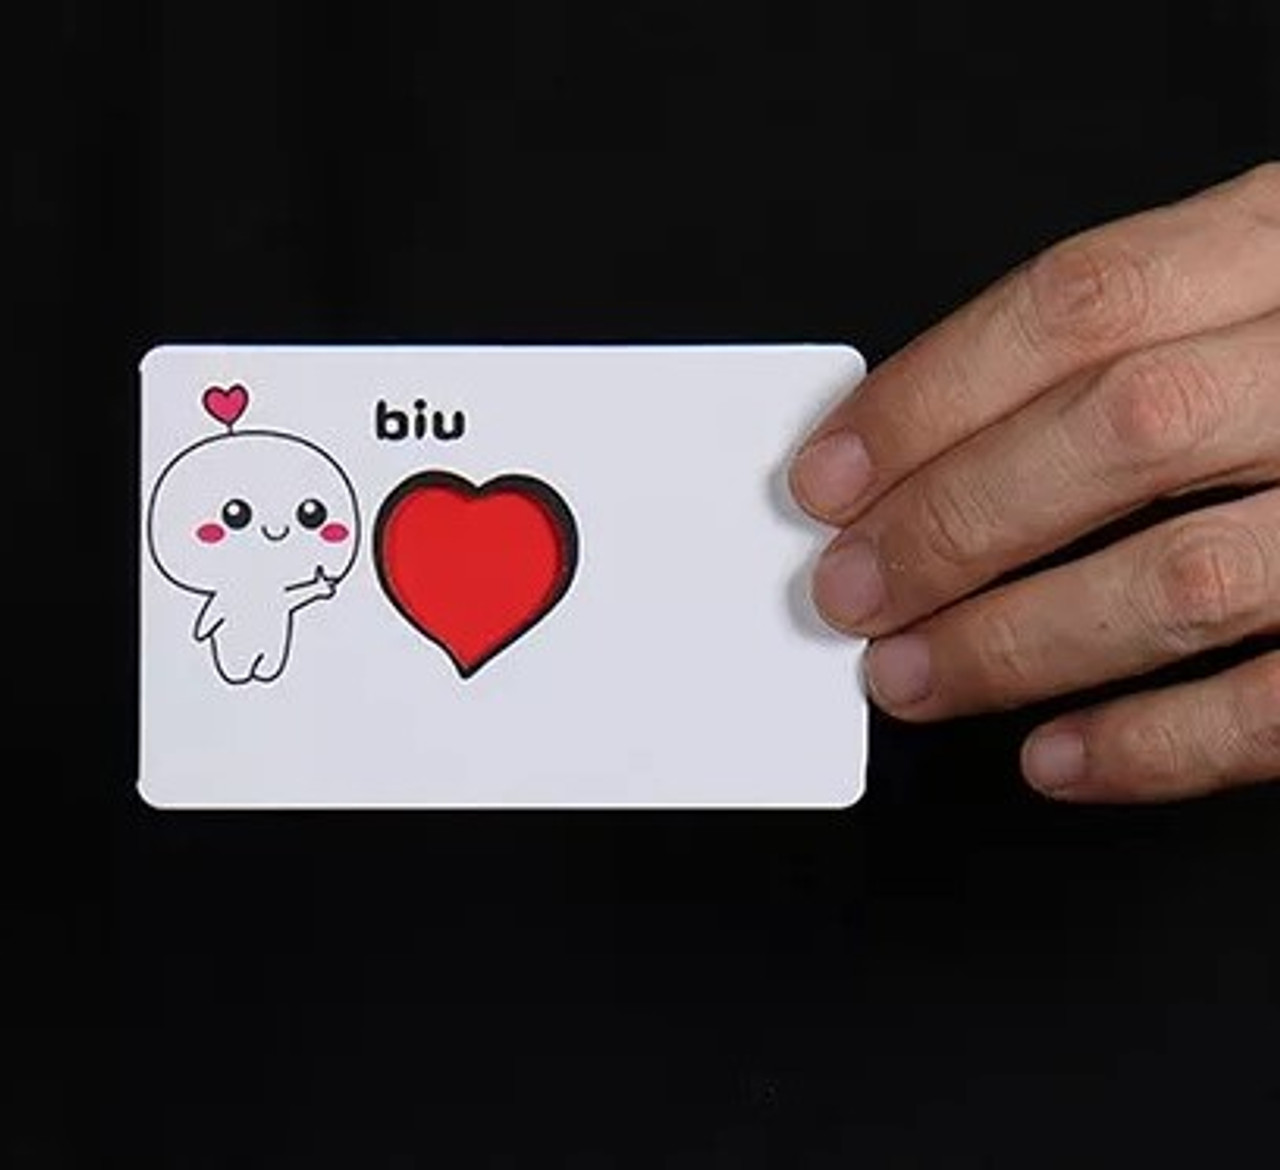 I Love You Take Heart Card Magic Trick